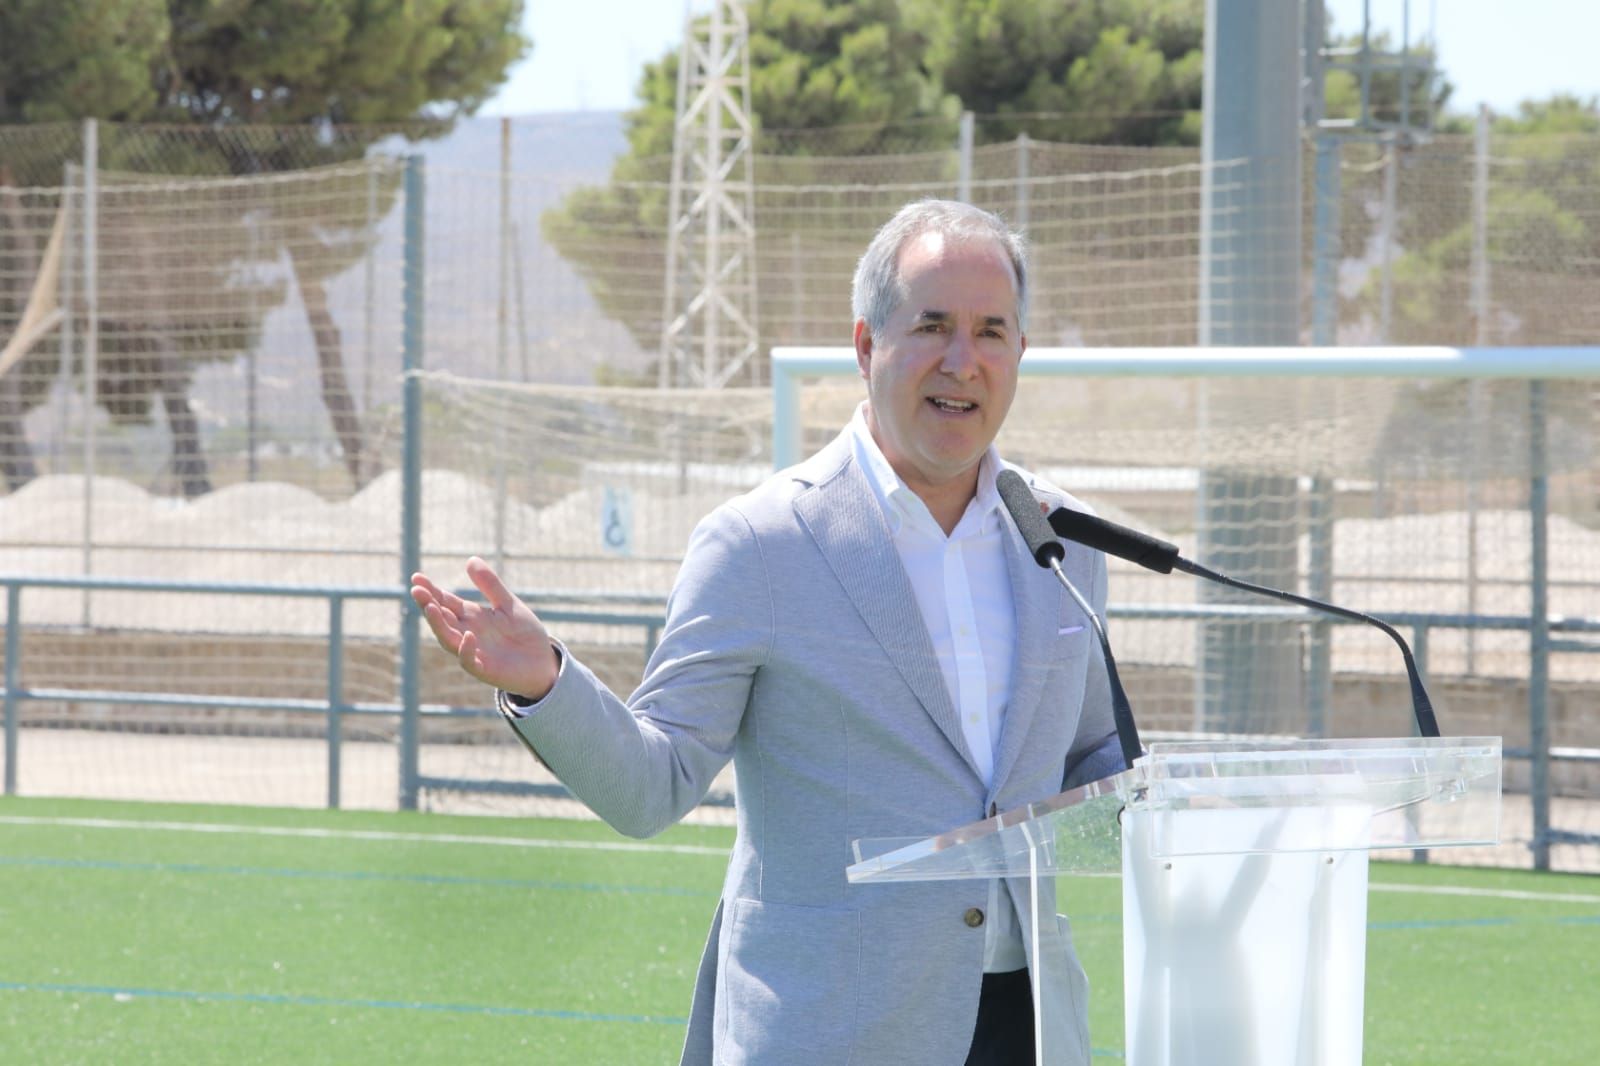 La visita de Jorge Mas a la Ciudad Deportiva del Real Zaragoza, en imágenes